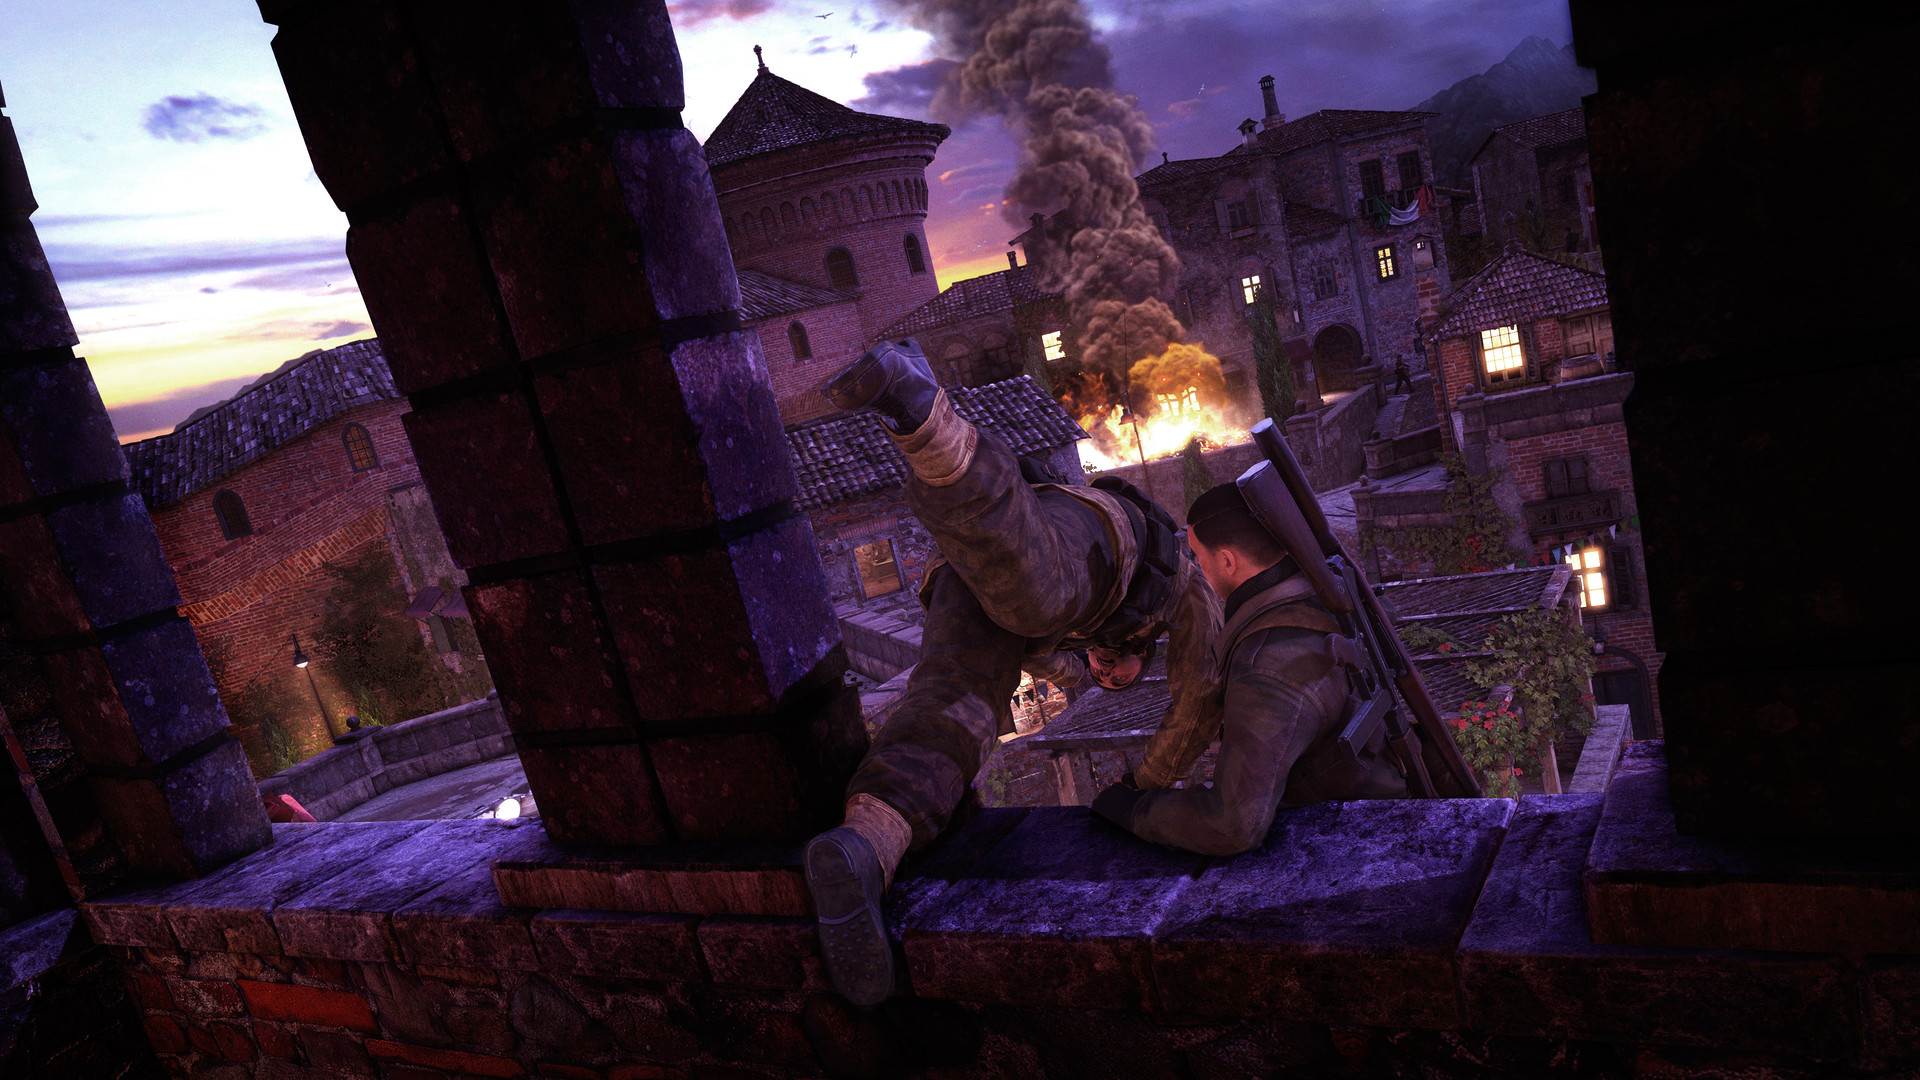 [$ 5.64] Sniper Elite 4 - Deathstorm Part 2: Infiltration DLC Steam CD Key